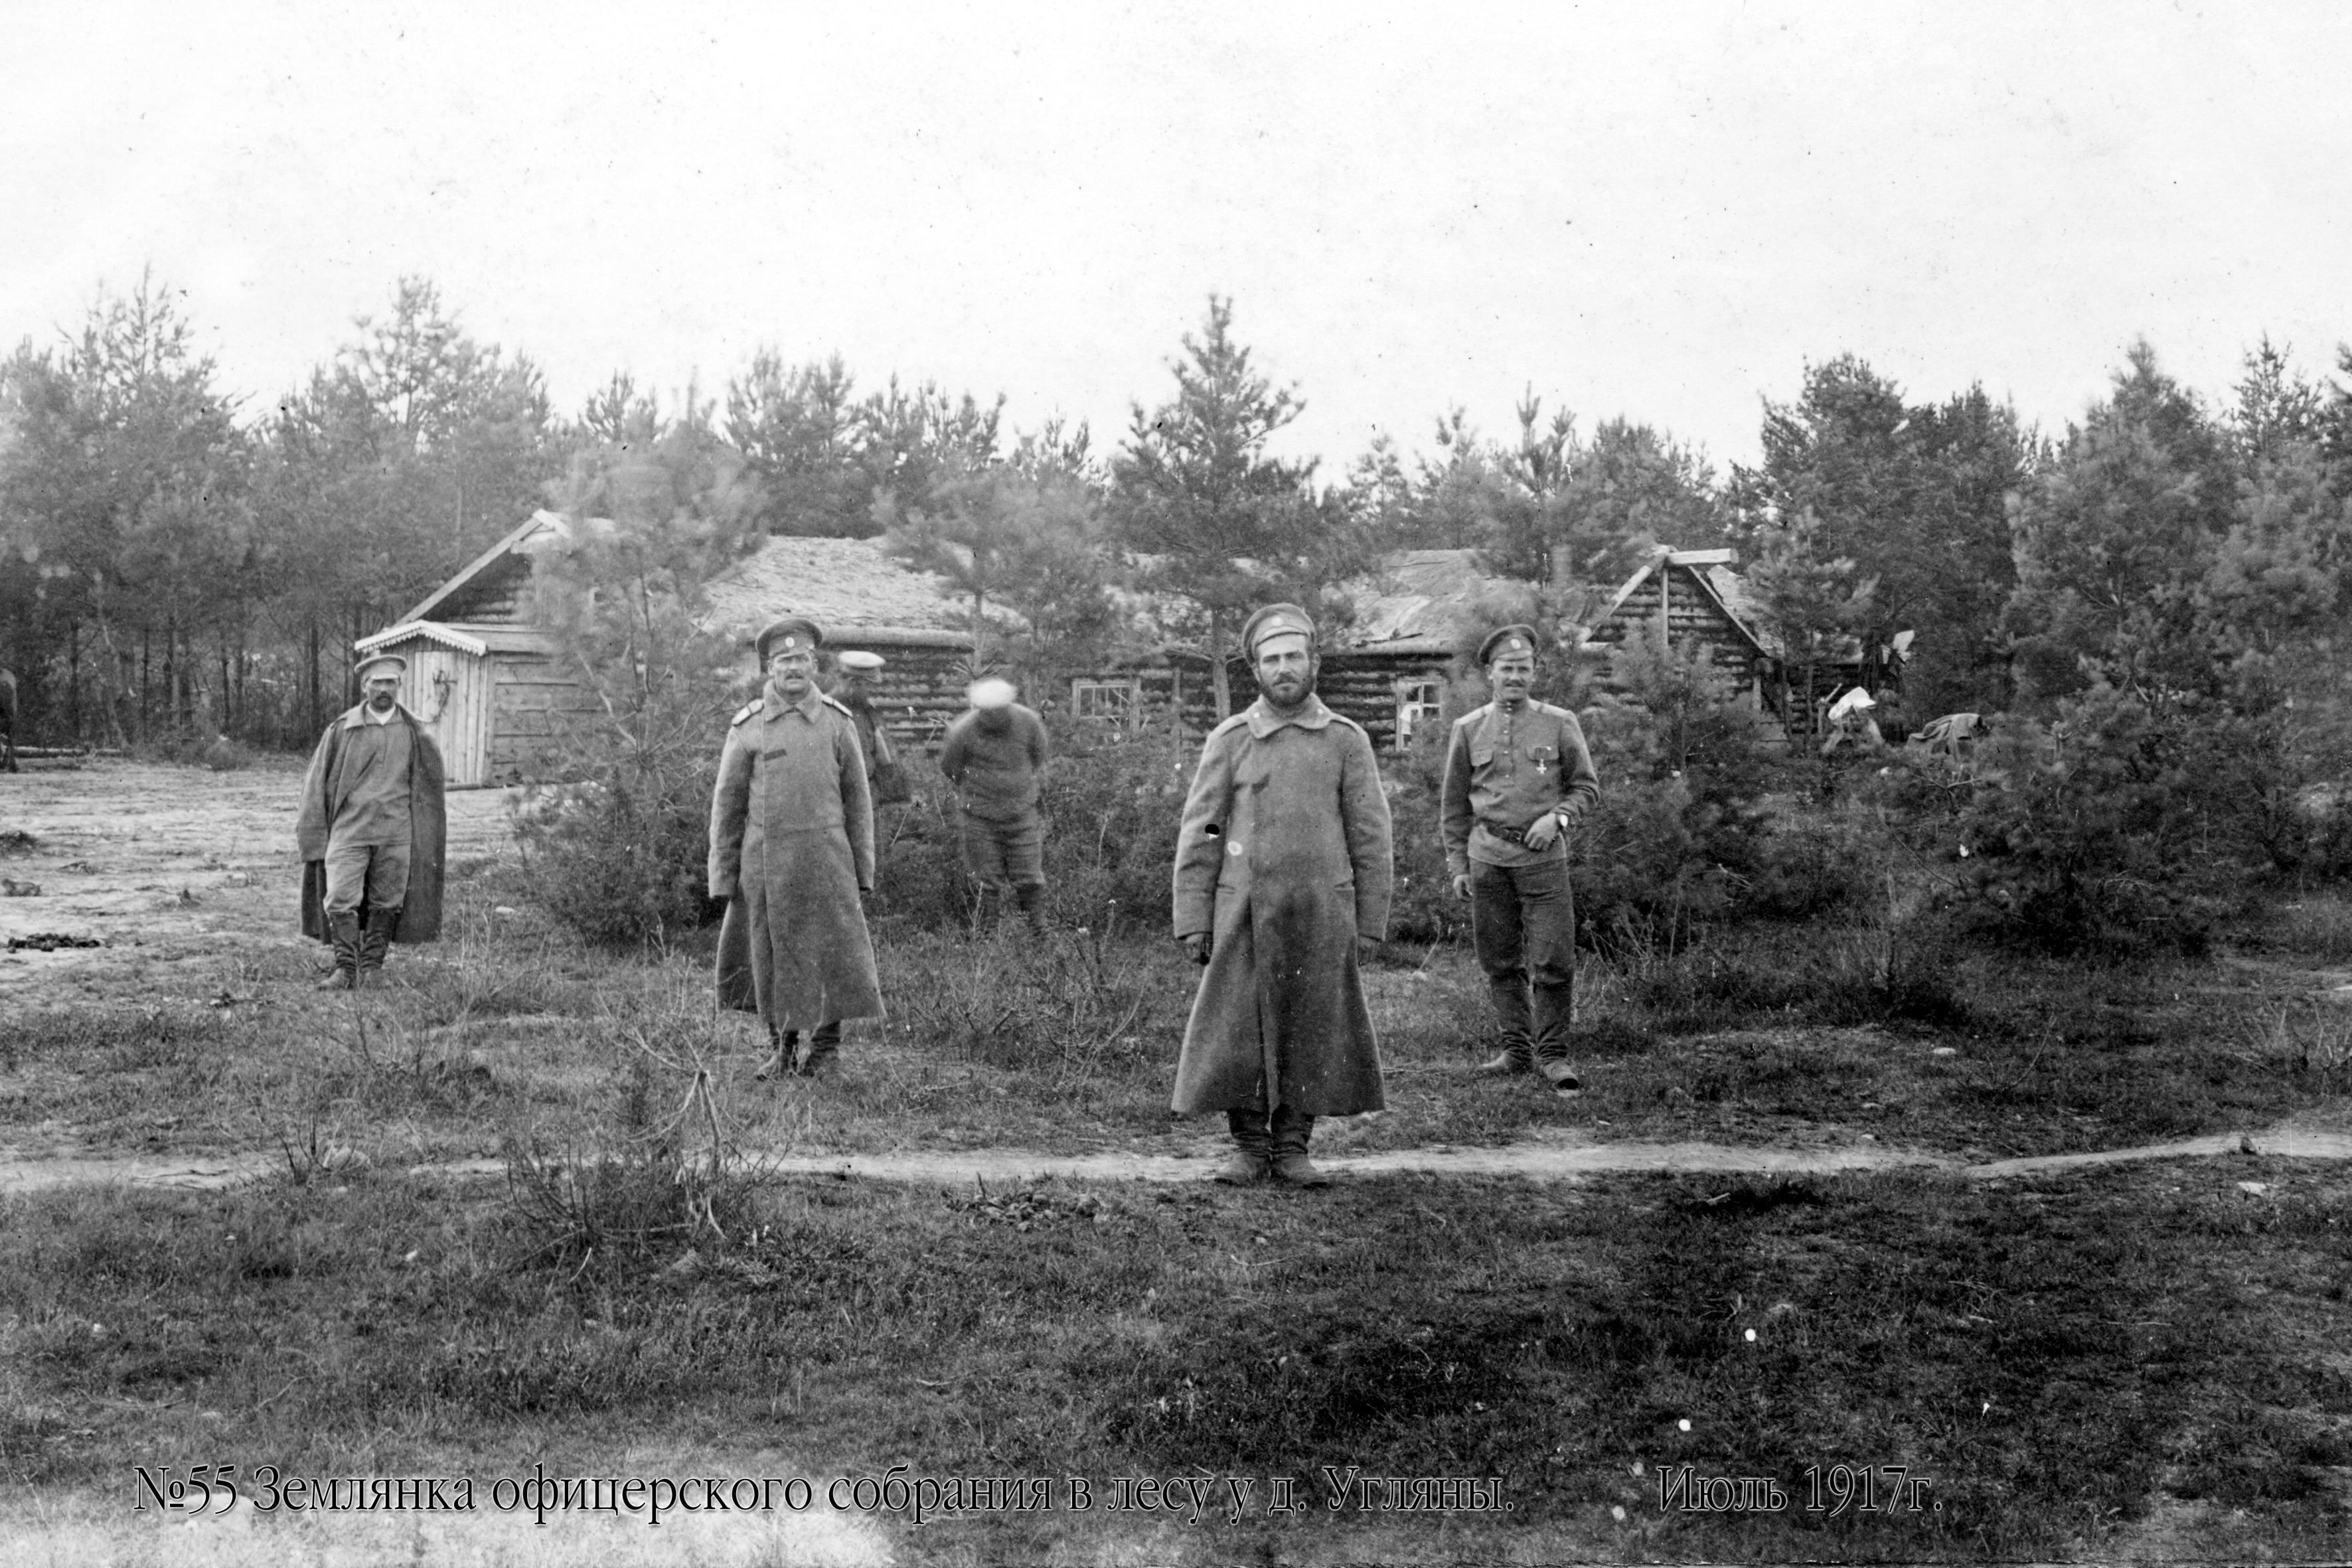 Karininkų susirinkimų žeminė miške prie Uglianų kaimo. 1917 m. liepos mėn.